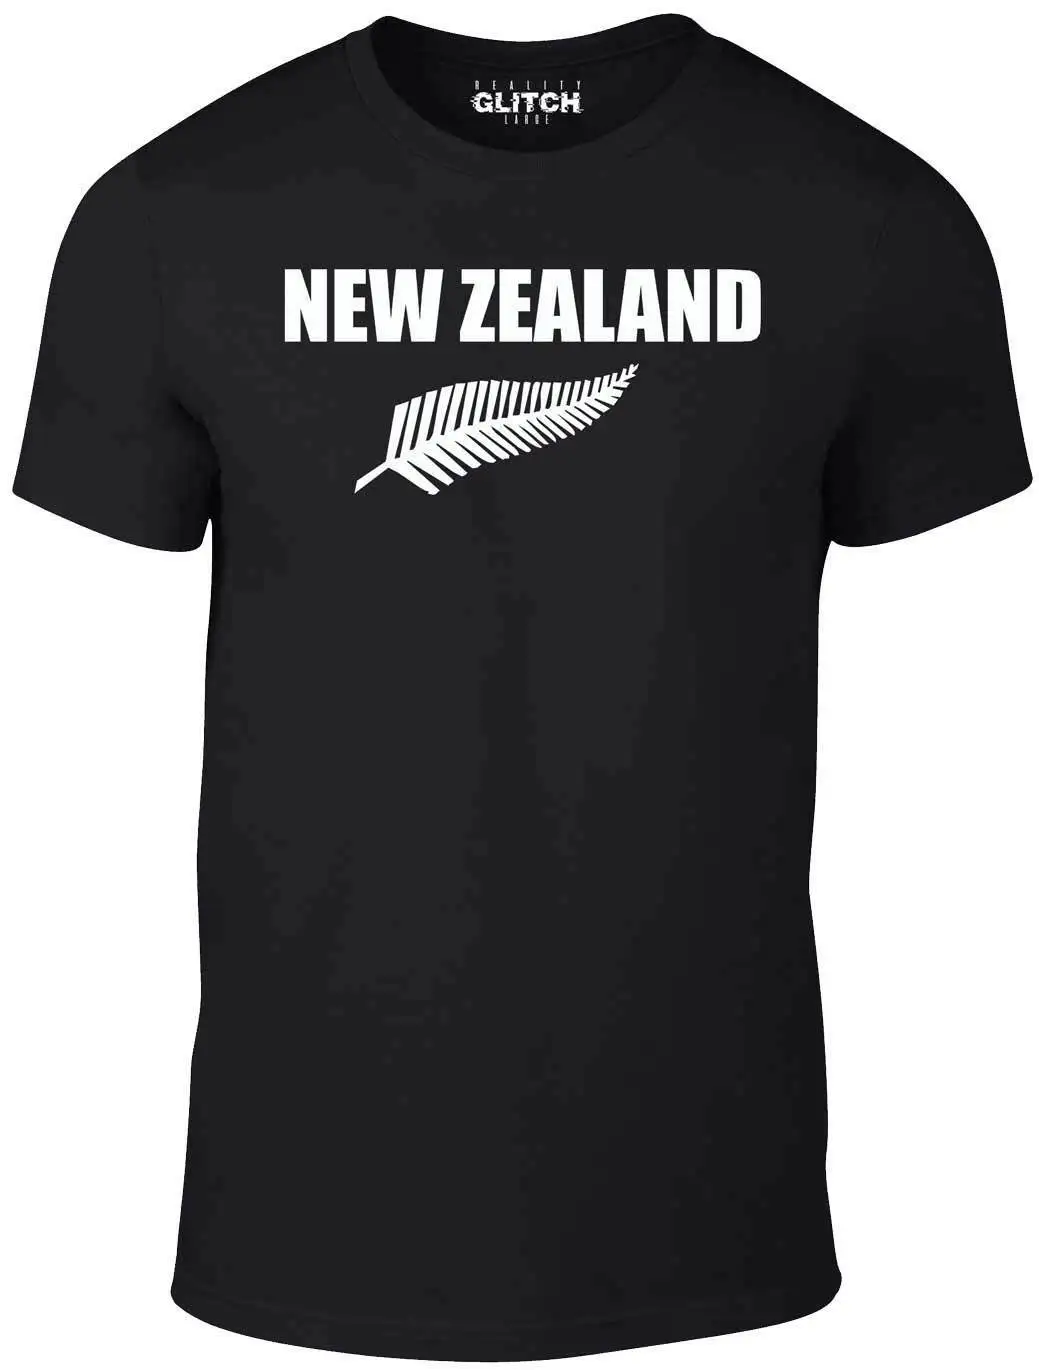 نيوزيلندا السرخس الرجبي تي شيرت الكيوي السود-حجم 4XL-5XL T قميص جميع الاتحاد هدية تي شيرت مطبوع ، الهيب هوب المحملة قميص 2019 الساخن تيز